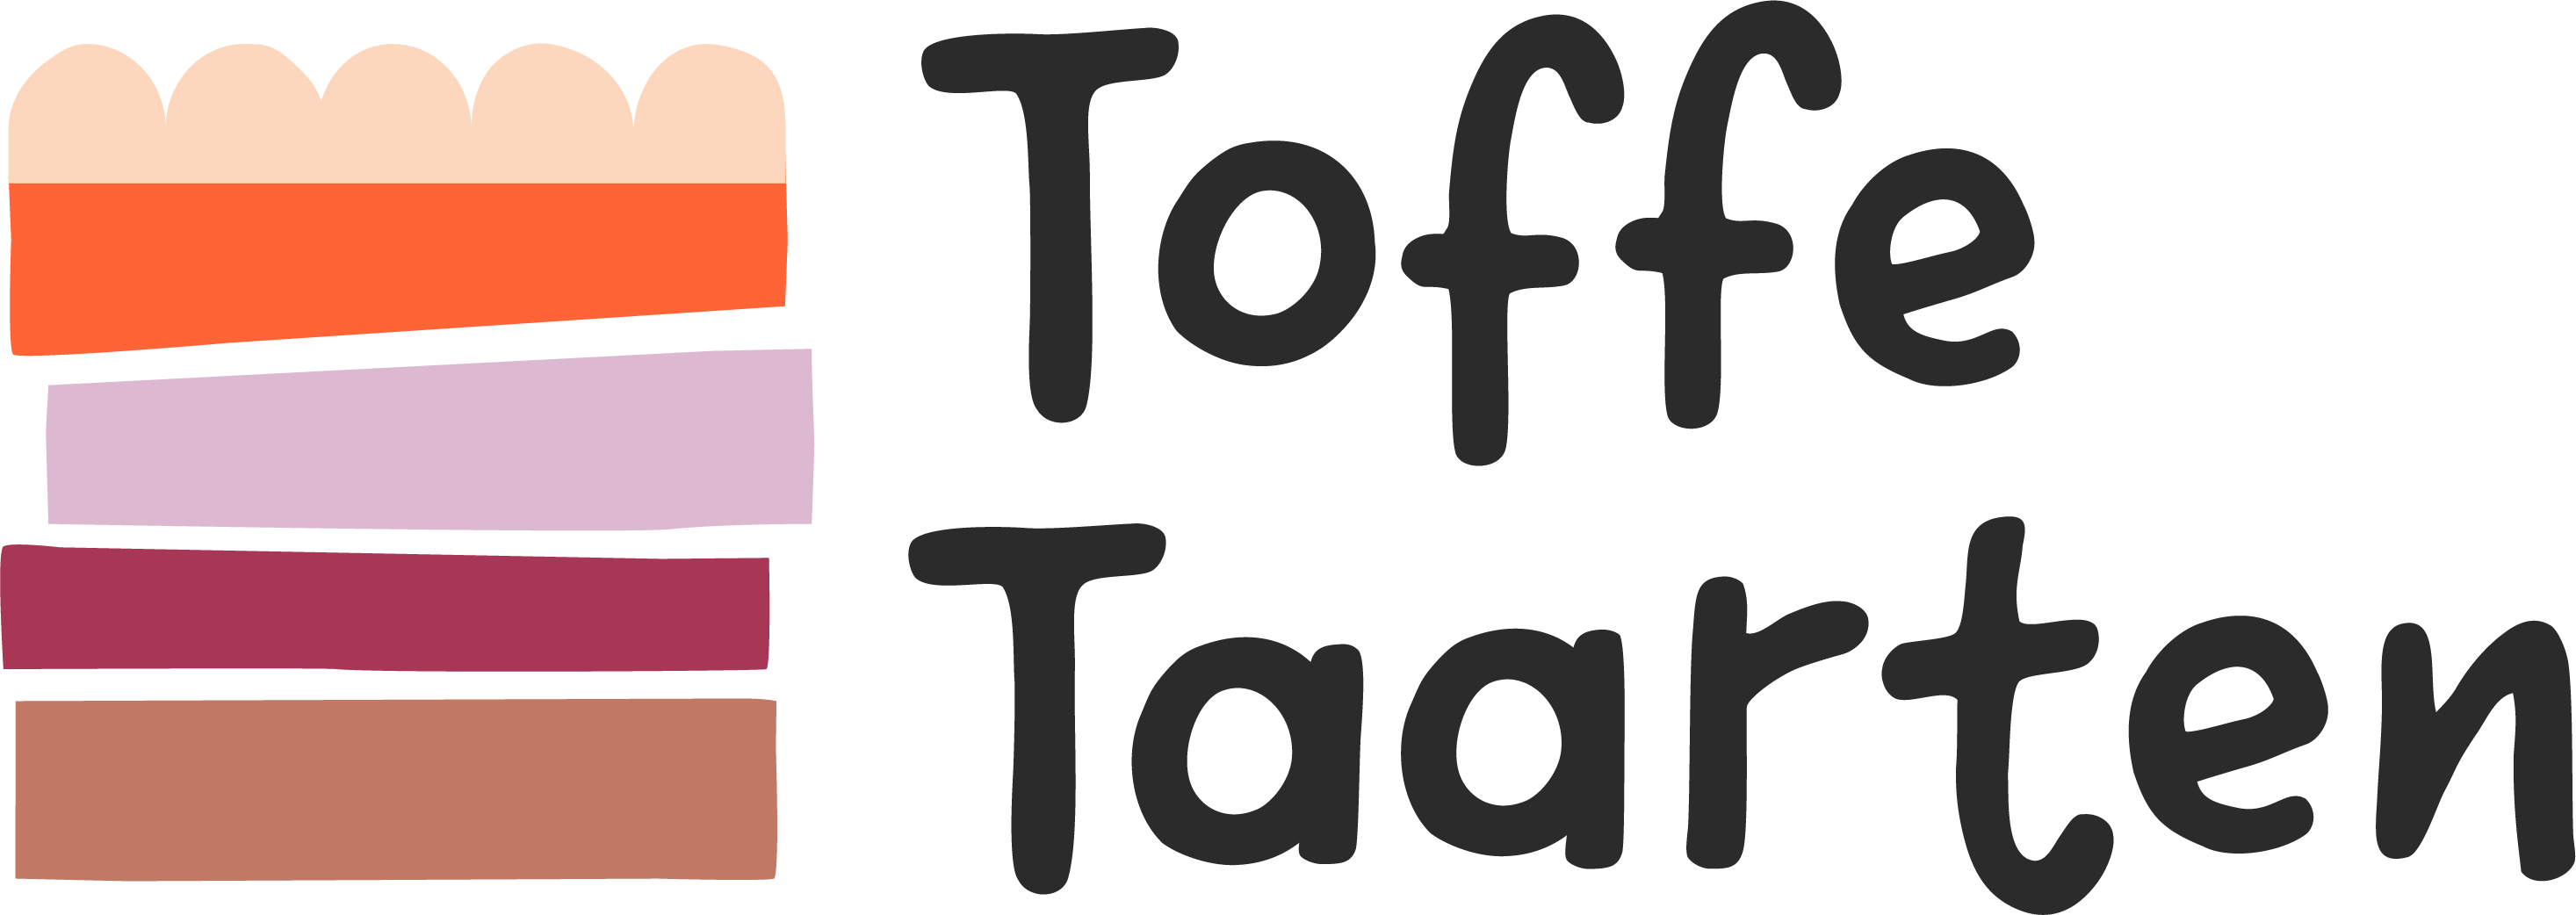 Toffe Taarten